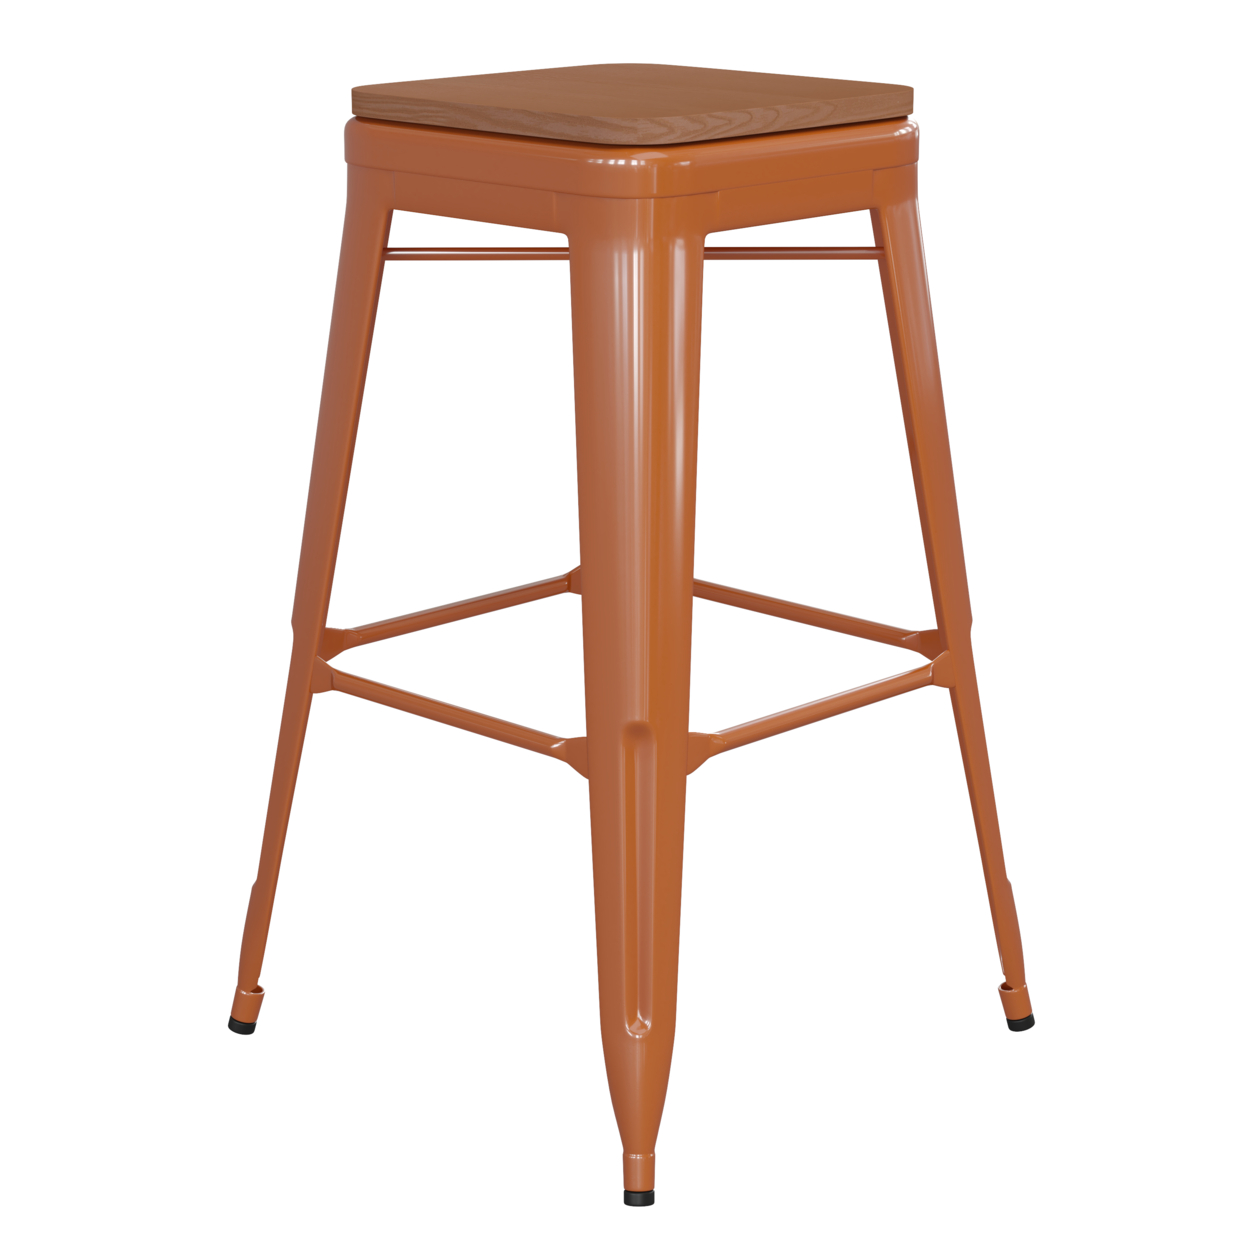 30 Inch Metal Stool, Teak Brown Wood Seat, Rust Orange